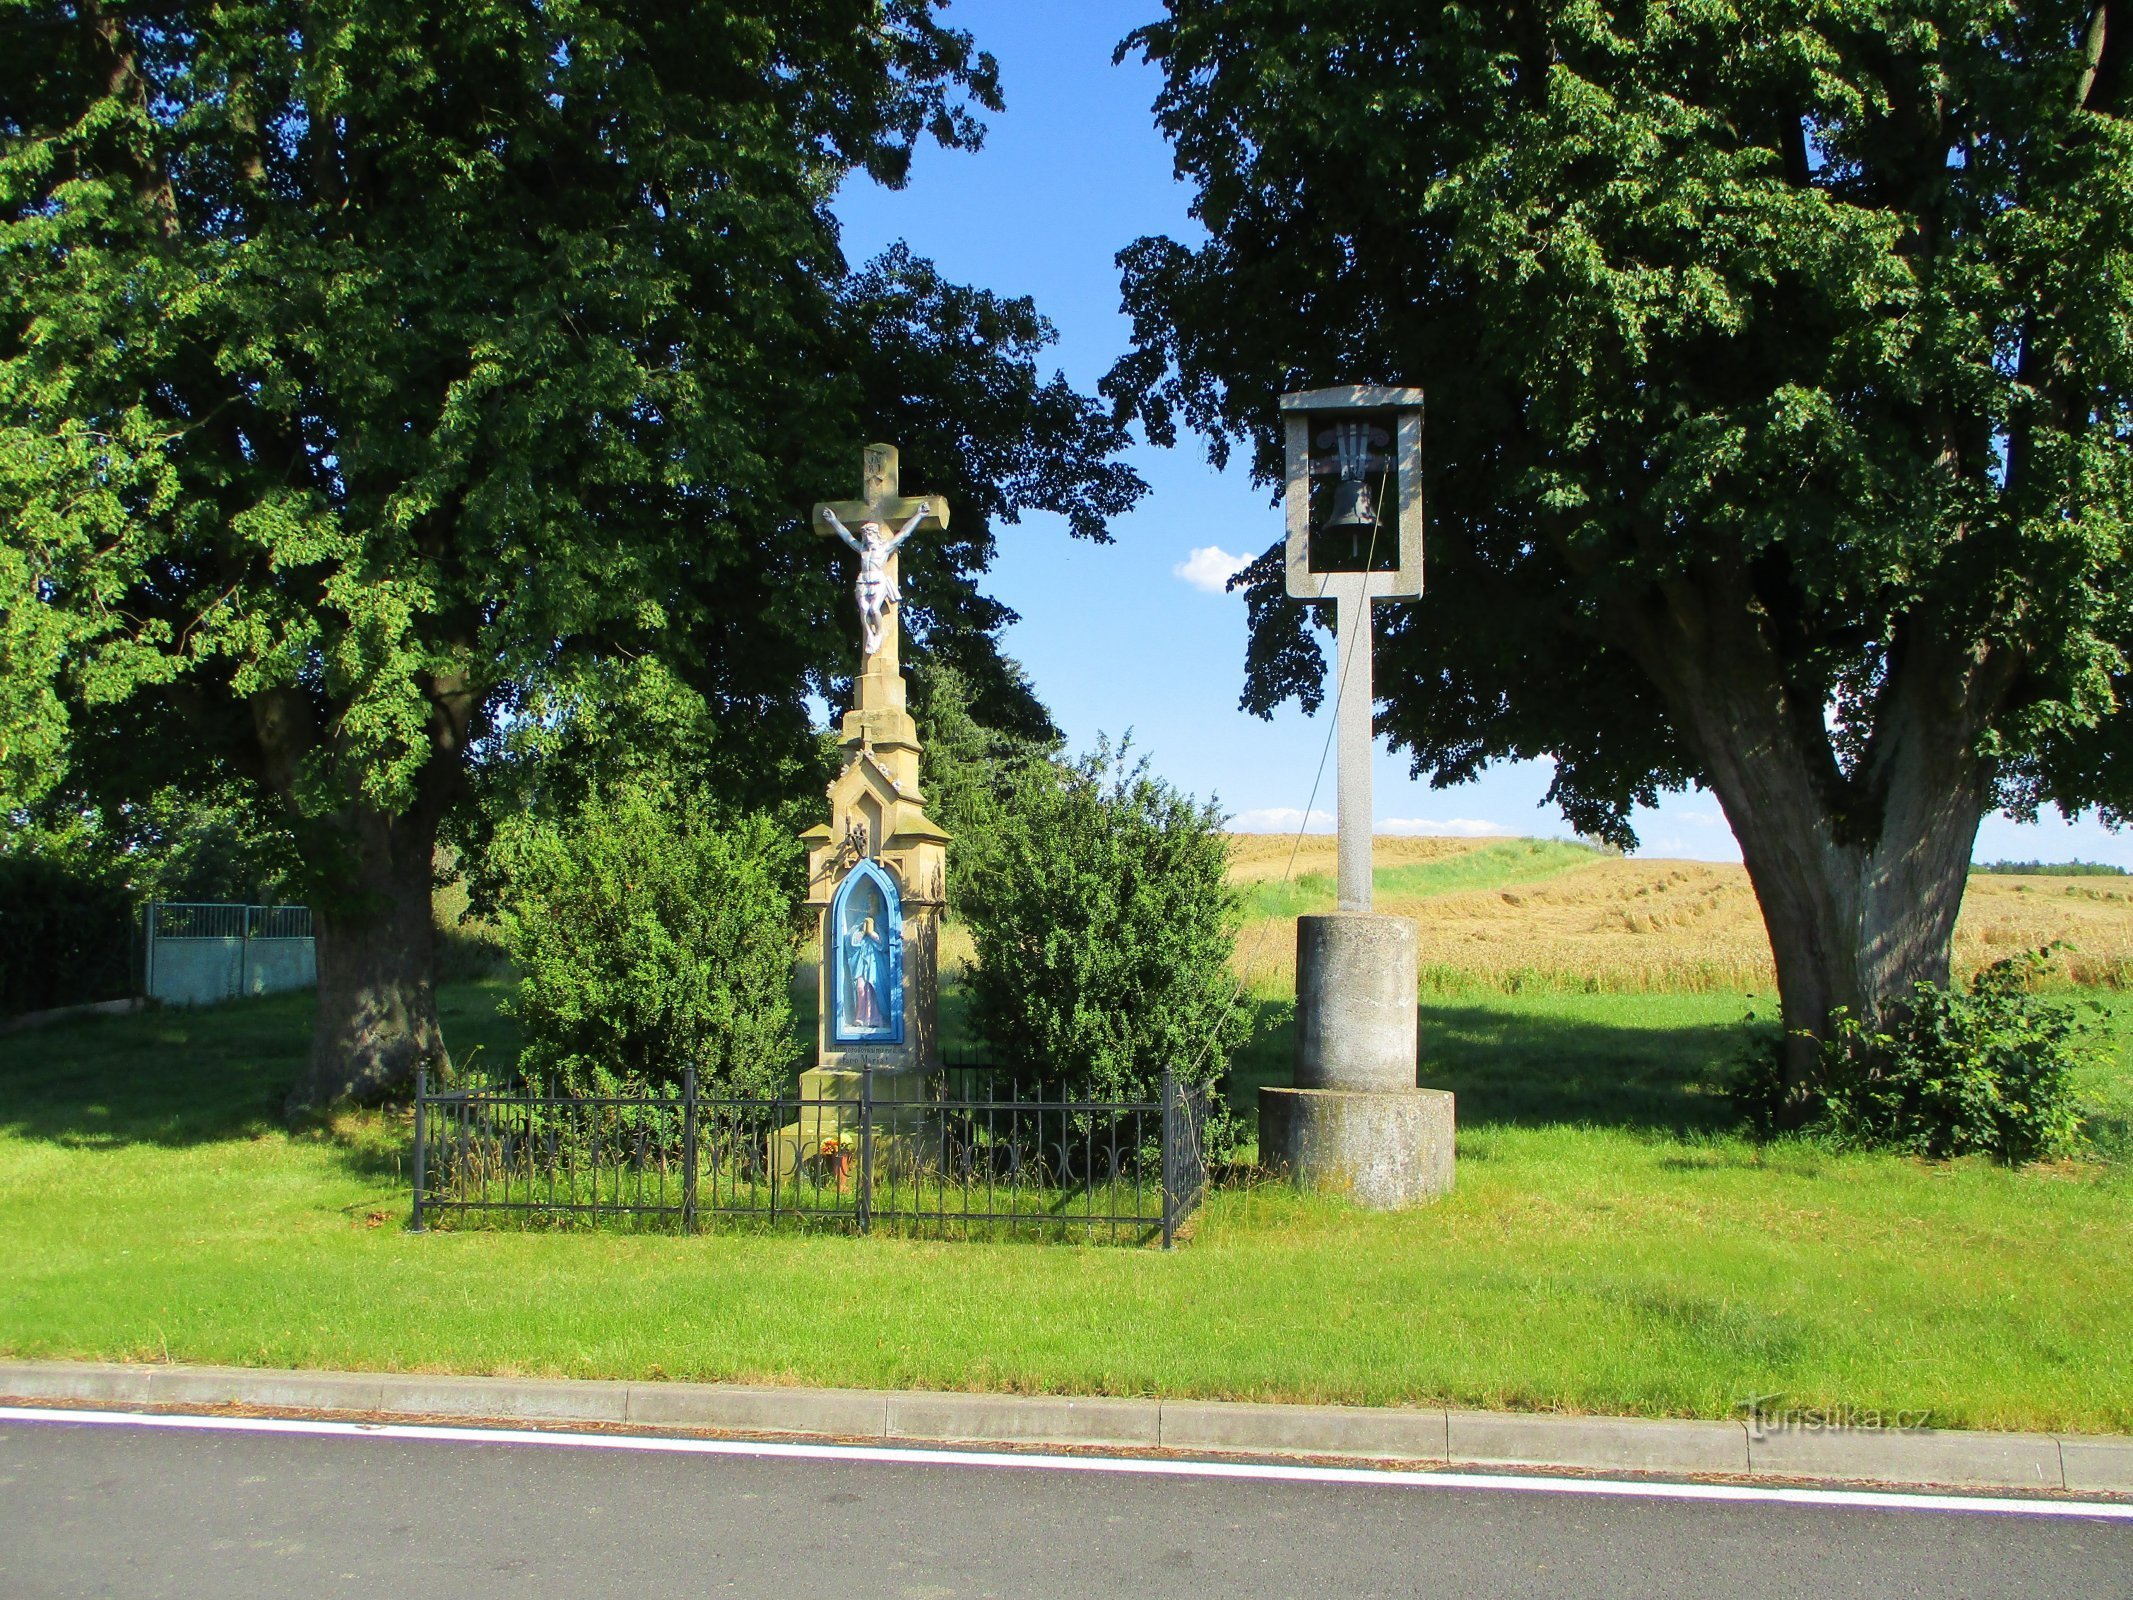 Cross with bell (Hubíles, 22.7.2020/XNUMX/XNUMX)